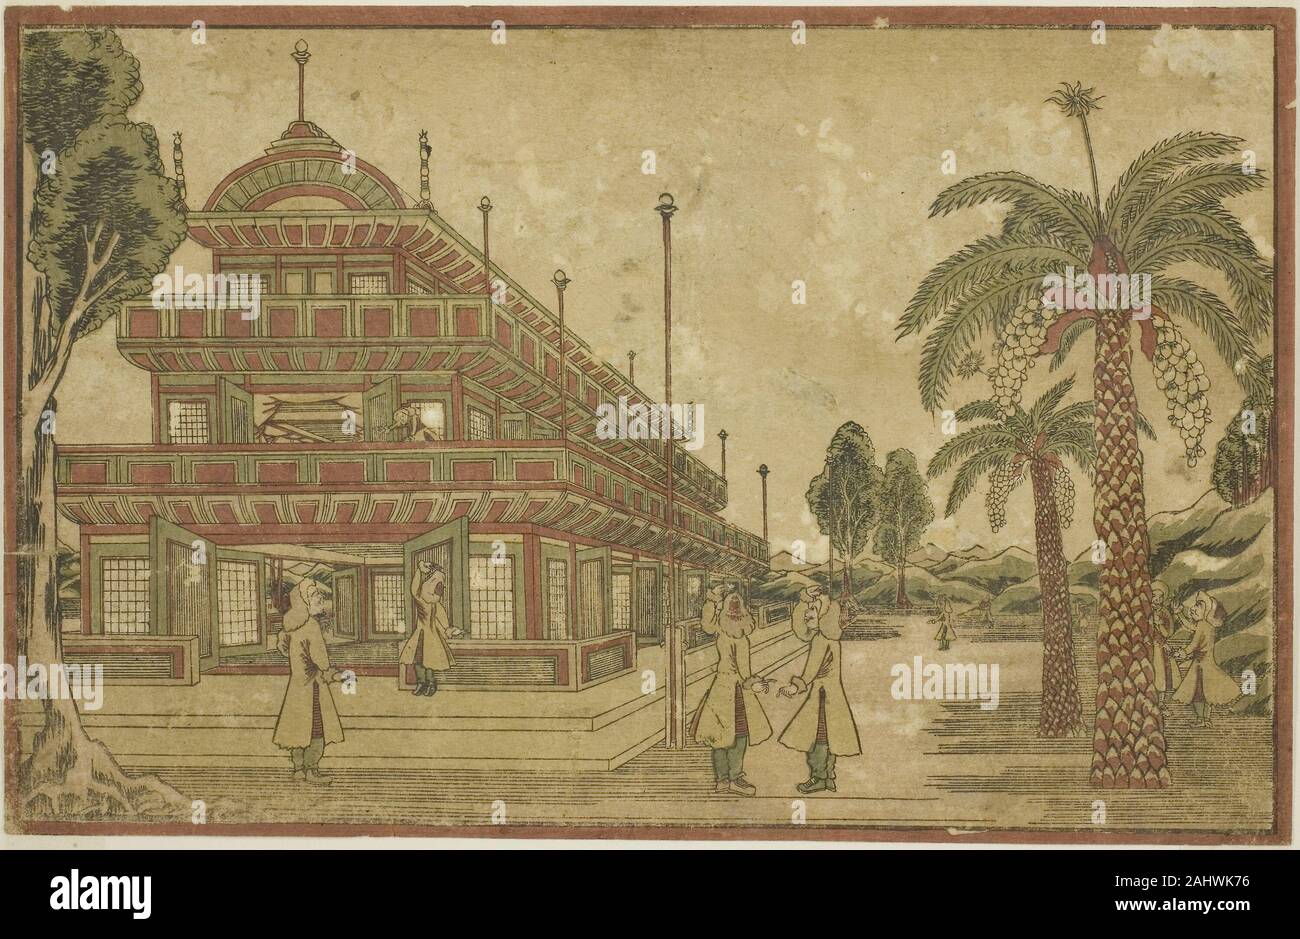 Utagawa Kuninaga. Neu niederländische Perspektive das Grab von König Mausolus in Asien veröffentlicht. 1820 - 1830. Japan. Farbe holzschnitt Stockfoto